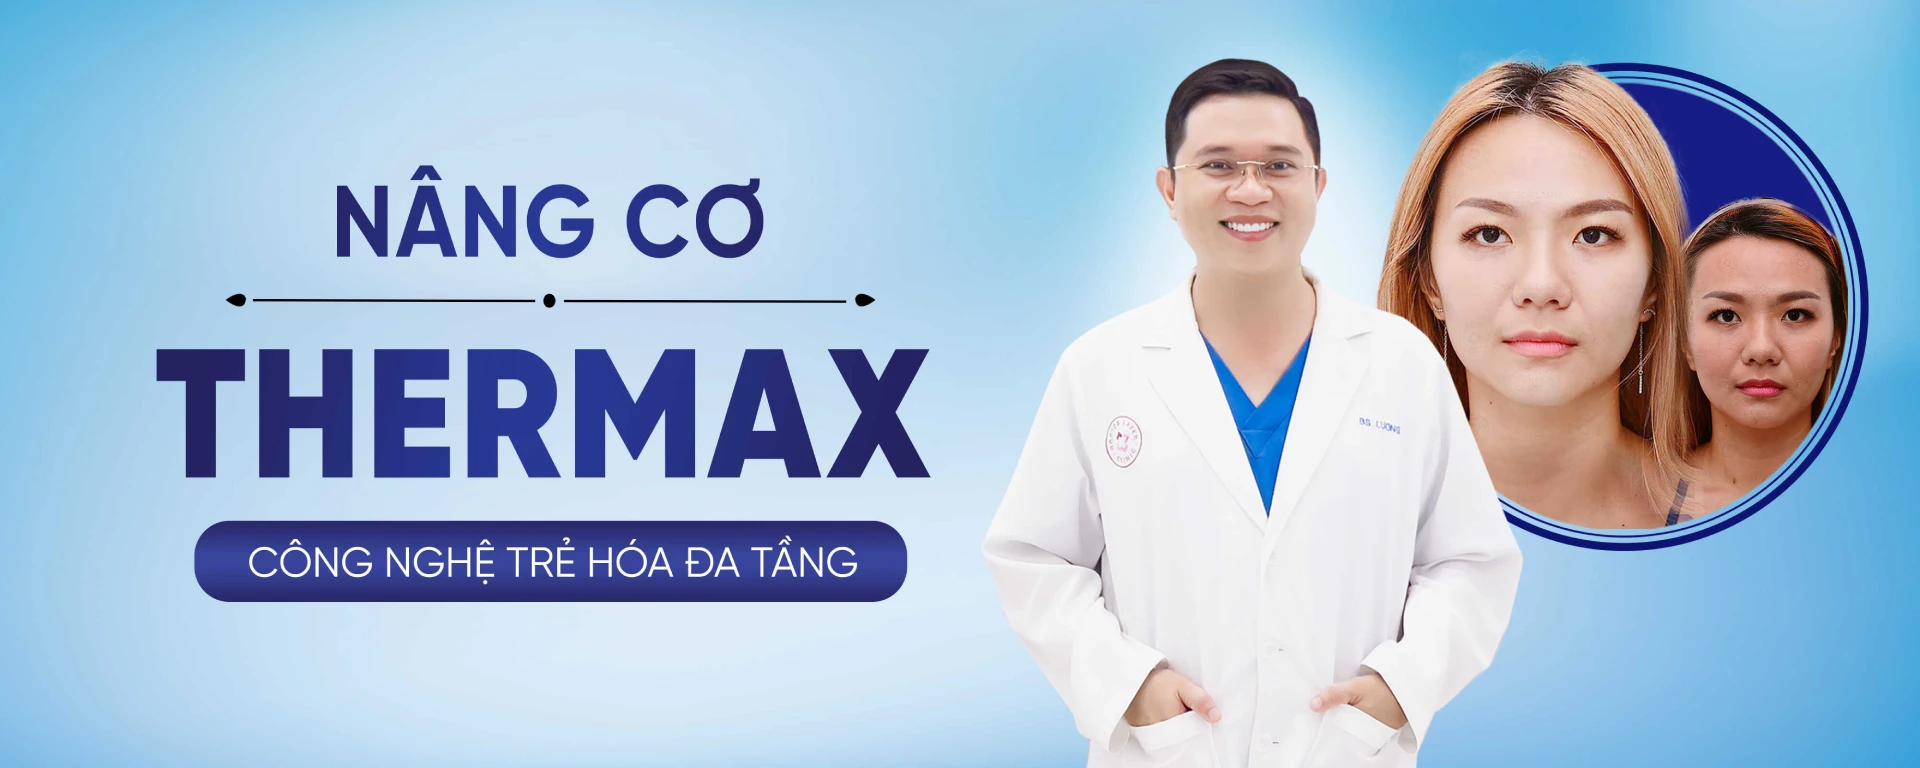 Nâng cơ Thermax Bác sĩ Lương